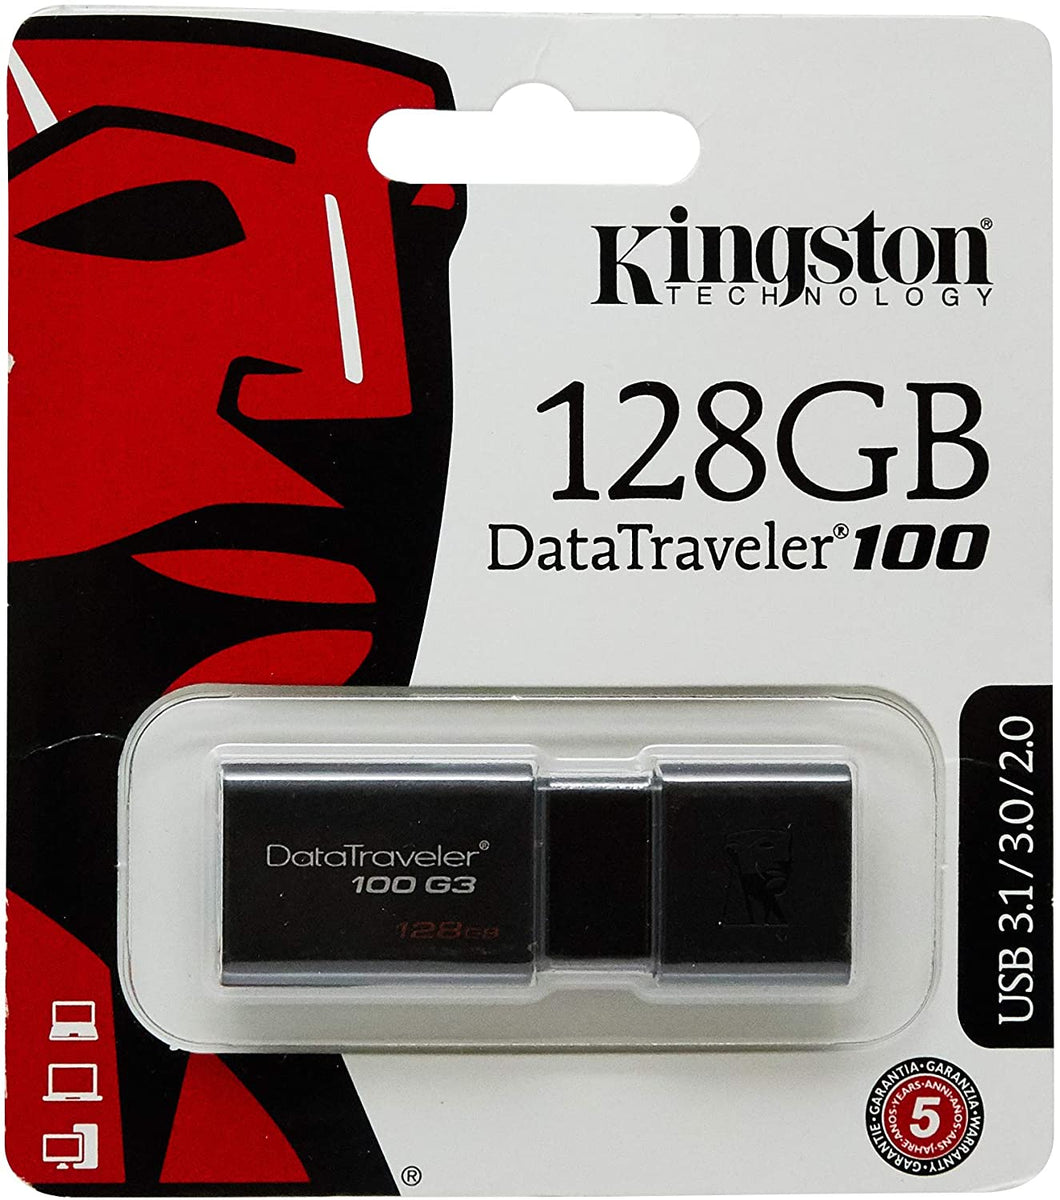 KINGSTON 128GB USB 3.0 DATA TRAVELER G3